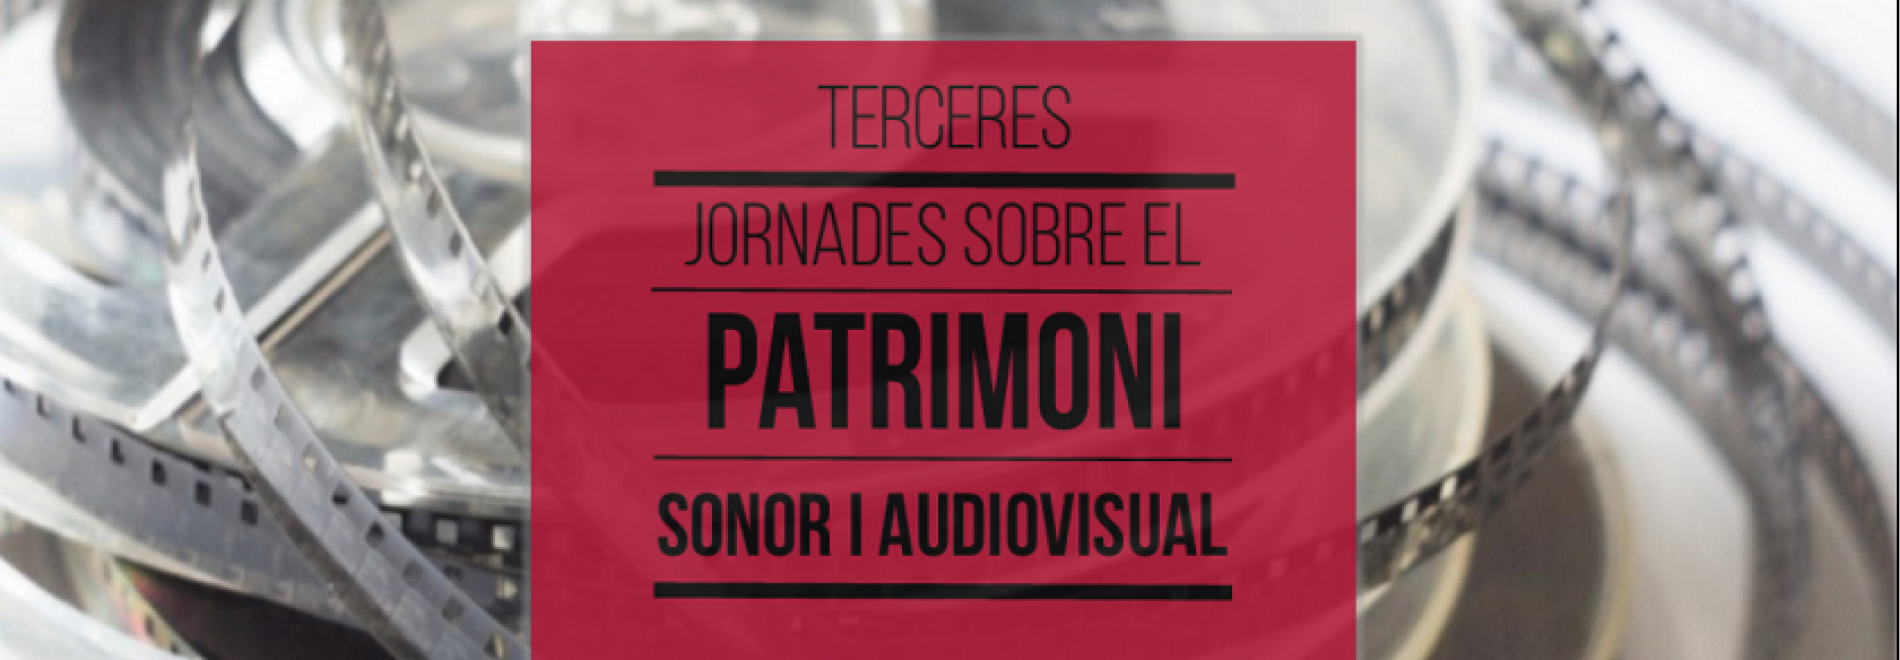 Terceres Jornades sobre el Patrimoni Sonor i Audiovisual